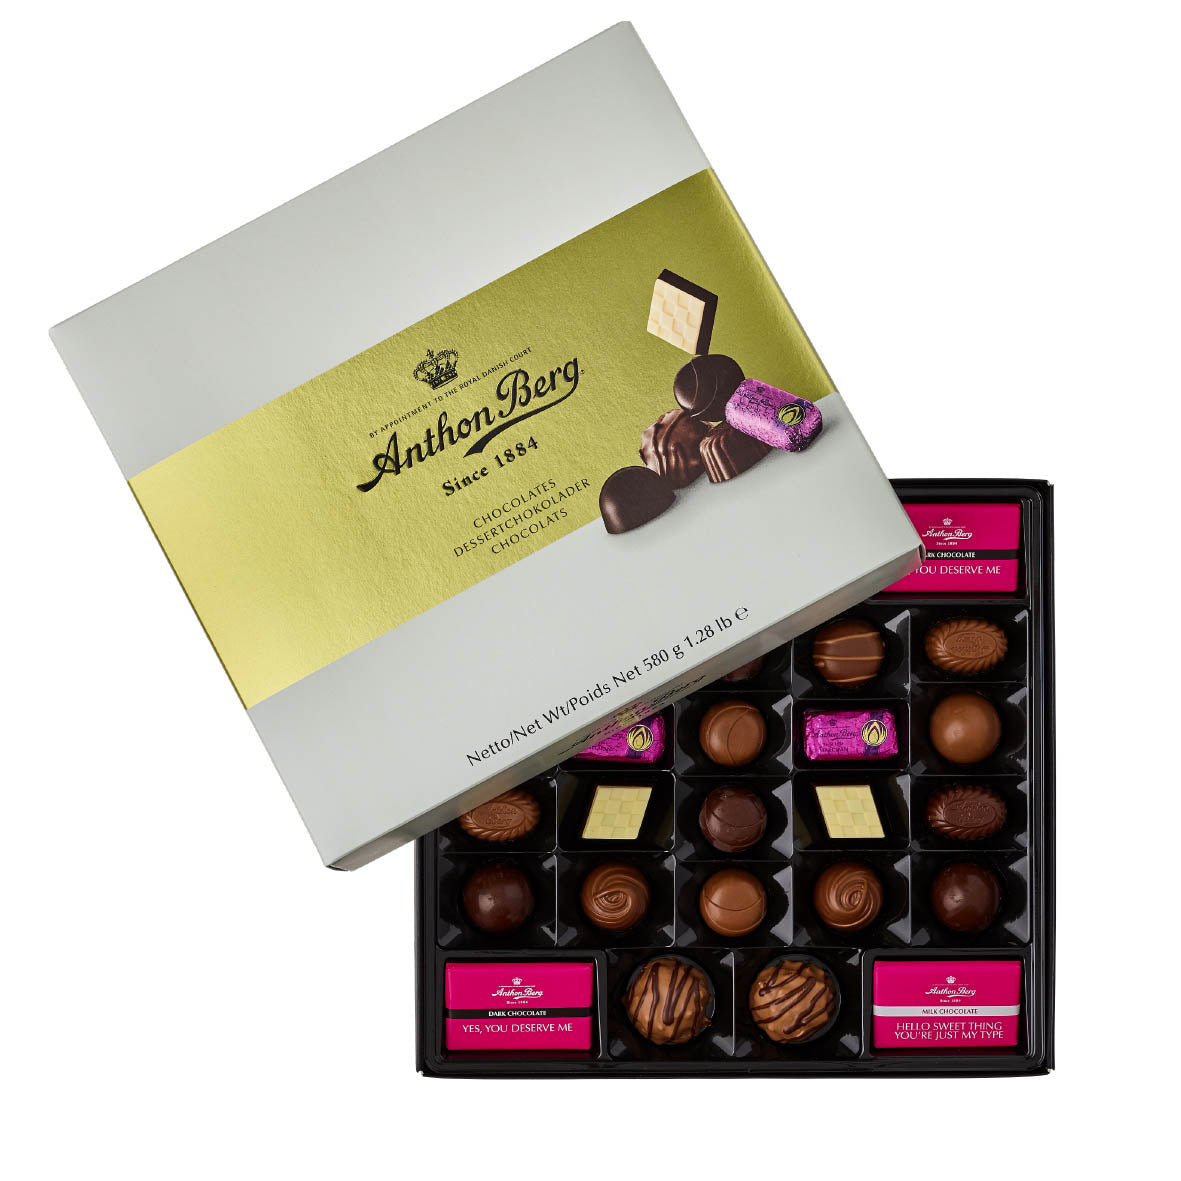 56 cioccolatini assortiti Anthon Berg | Confezione regalo | 580g | Cartone con 6 confezioni